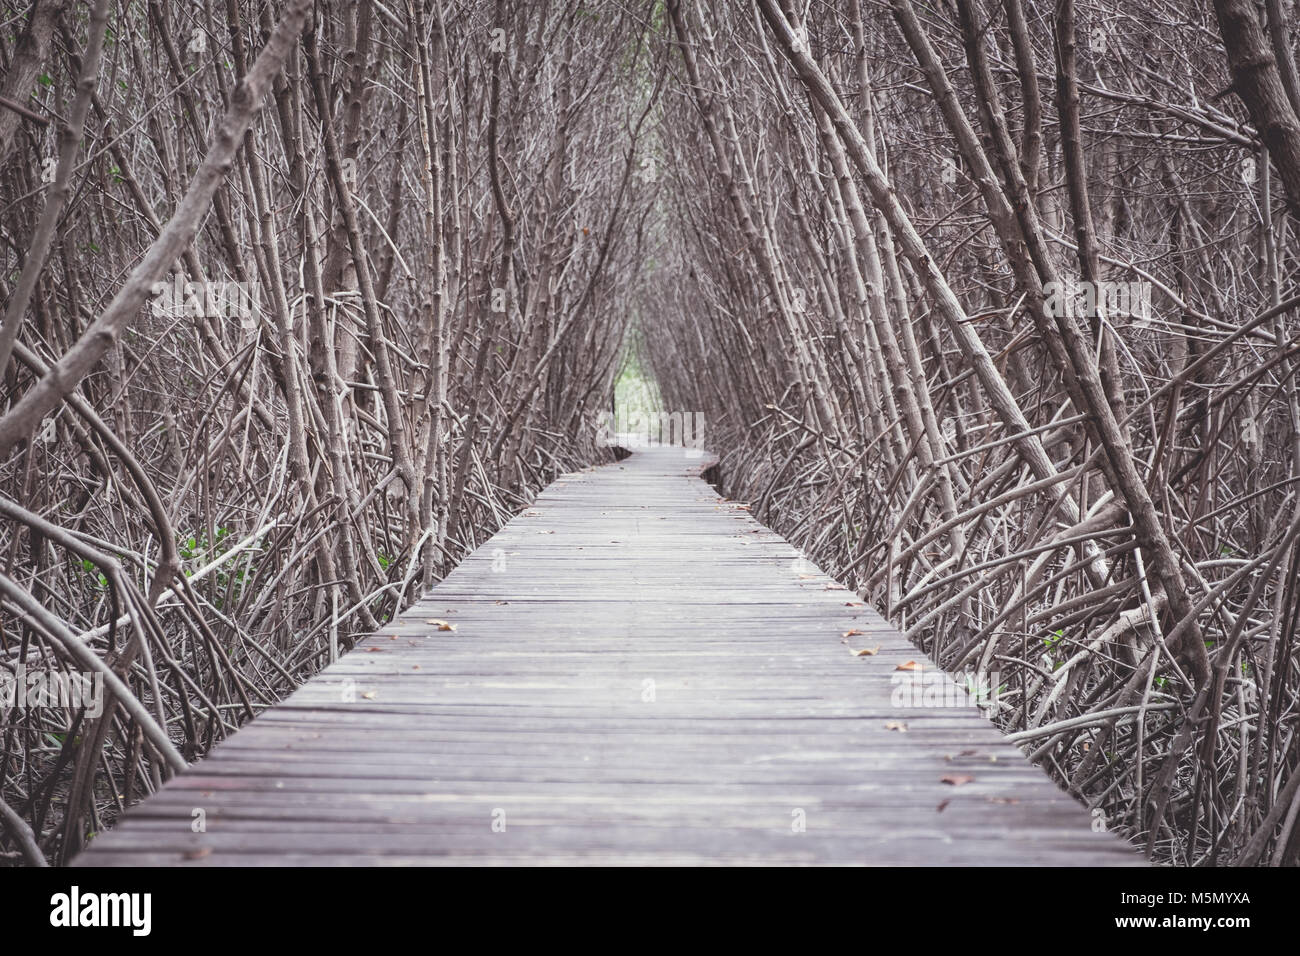 Promenade de bois entre la forêt de mangrove de l'étude,la nature,Low angle view, Vintage filtré. Banque D'Images